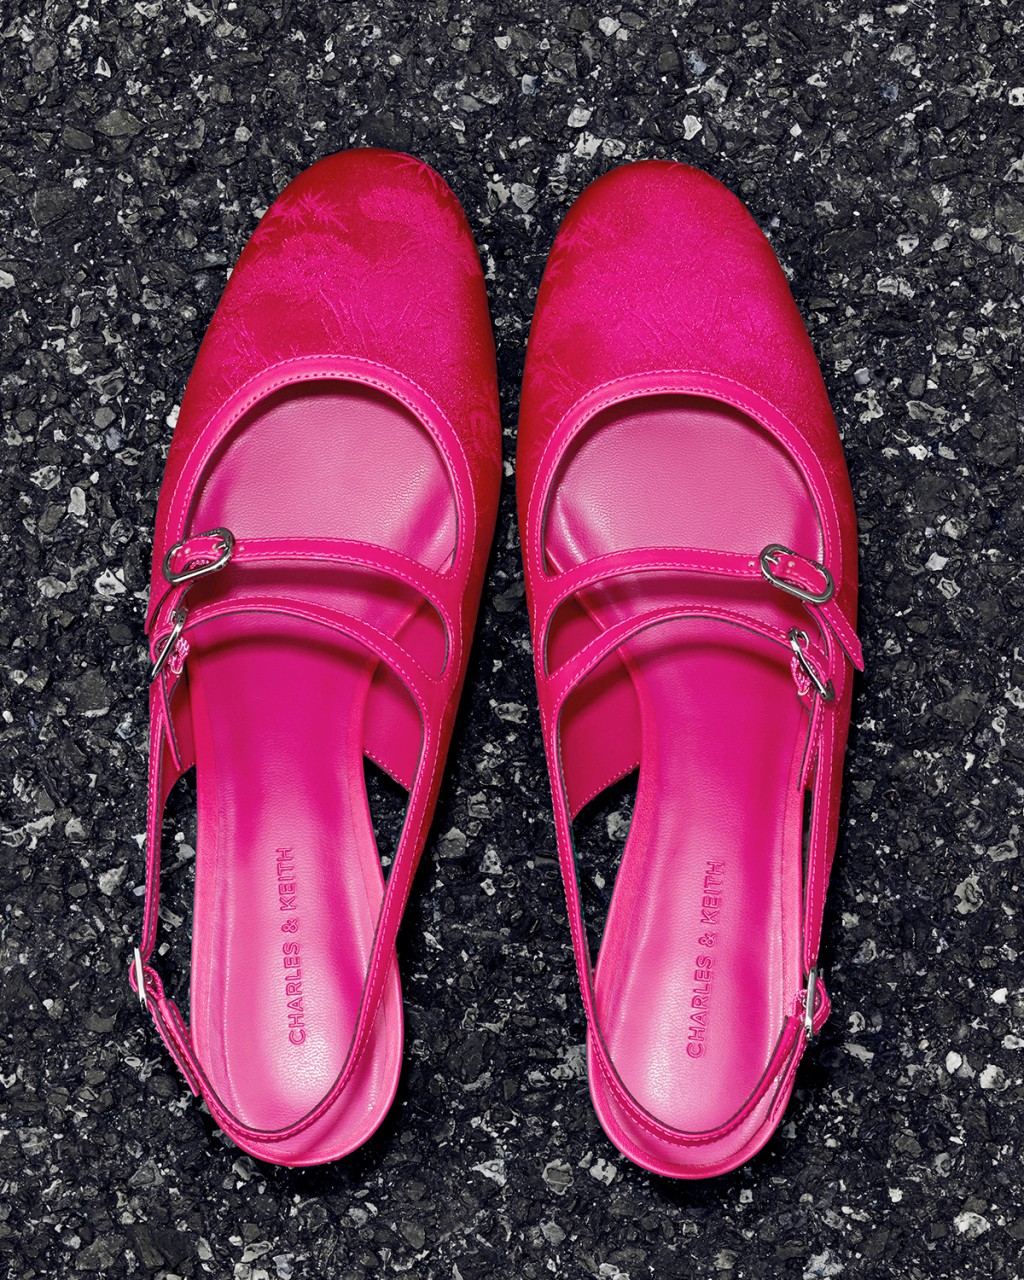 春節系列紫紅色Clementine雙帶粗跟鞋/$439。